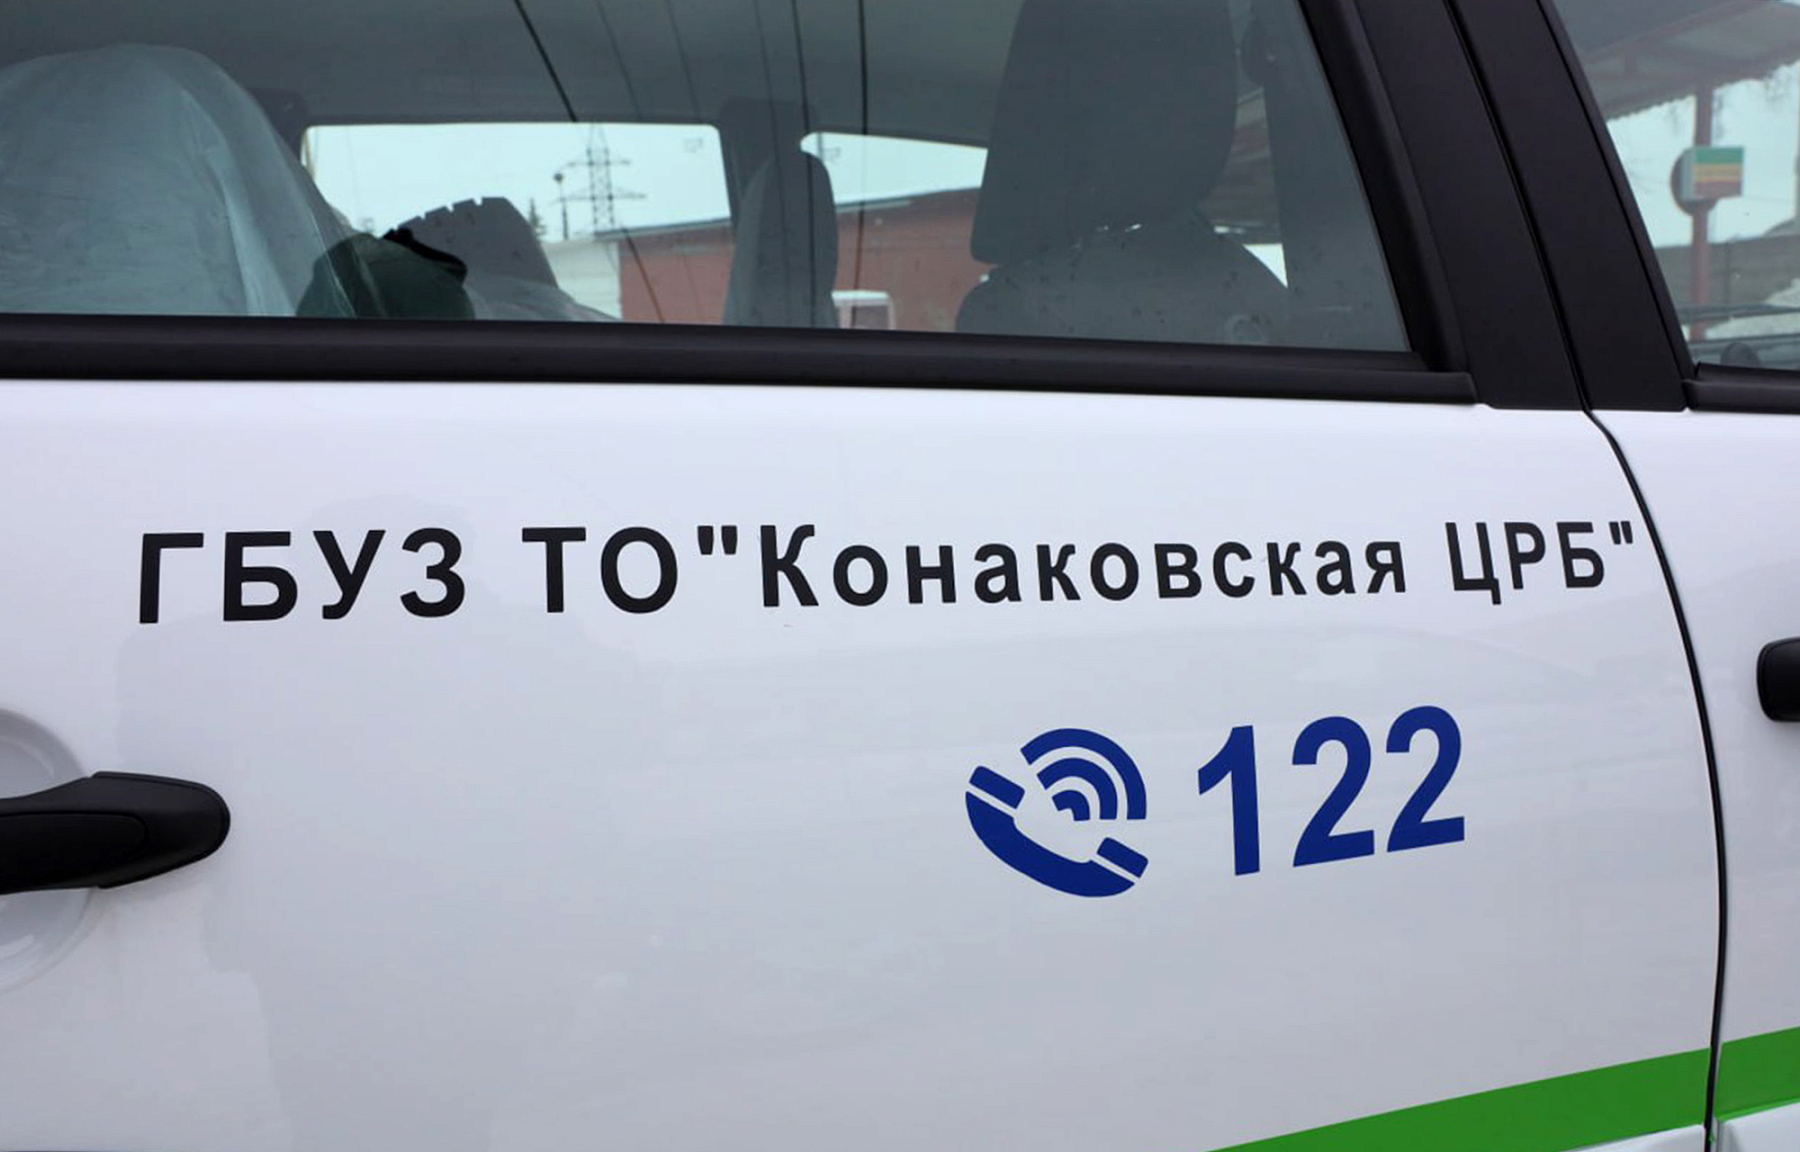 В учреждения здравоохранения Тверской области поступил новый санитарный транспорт